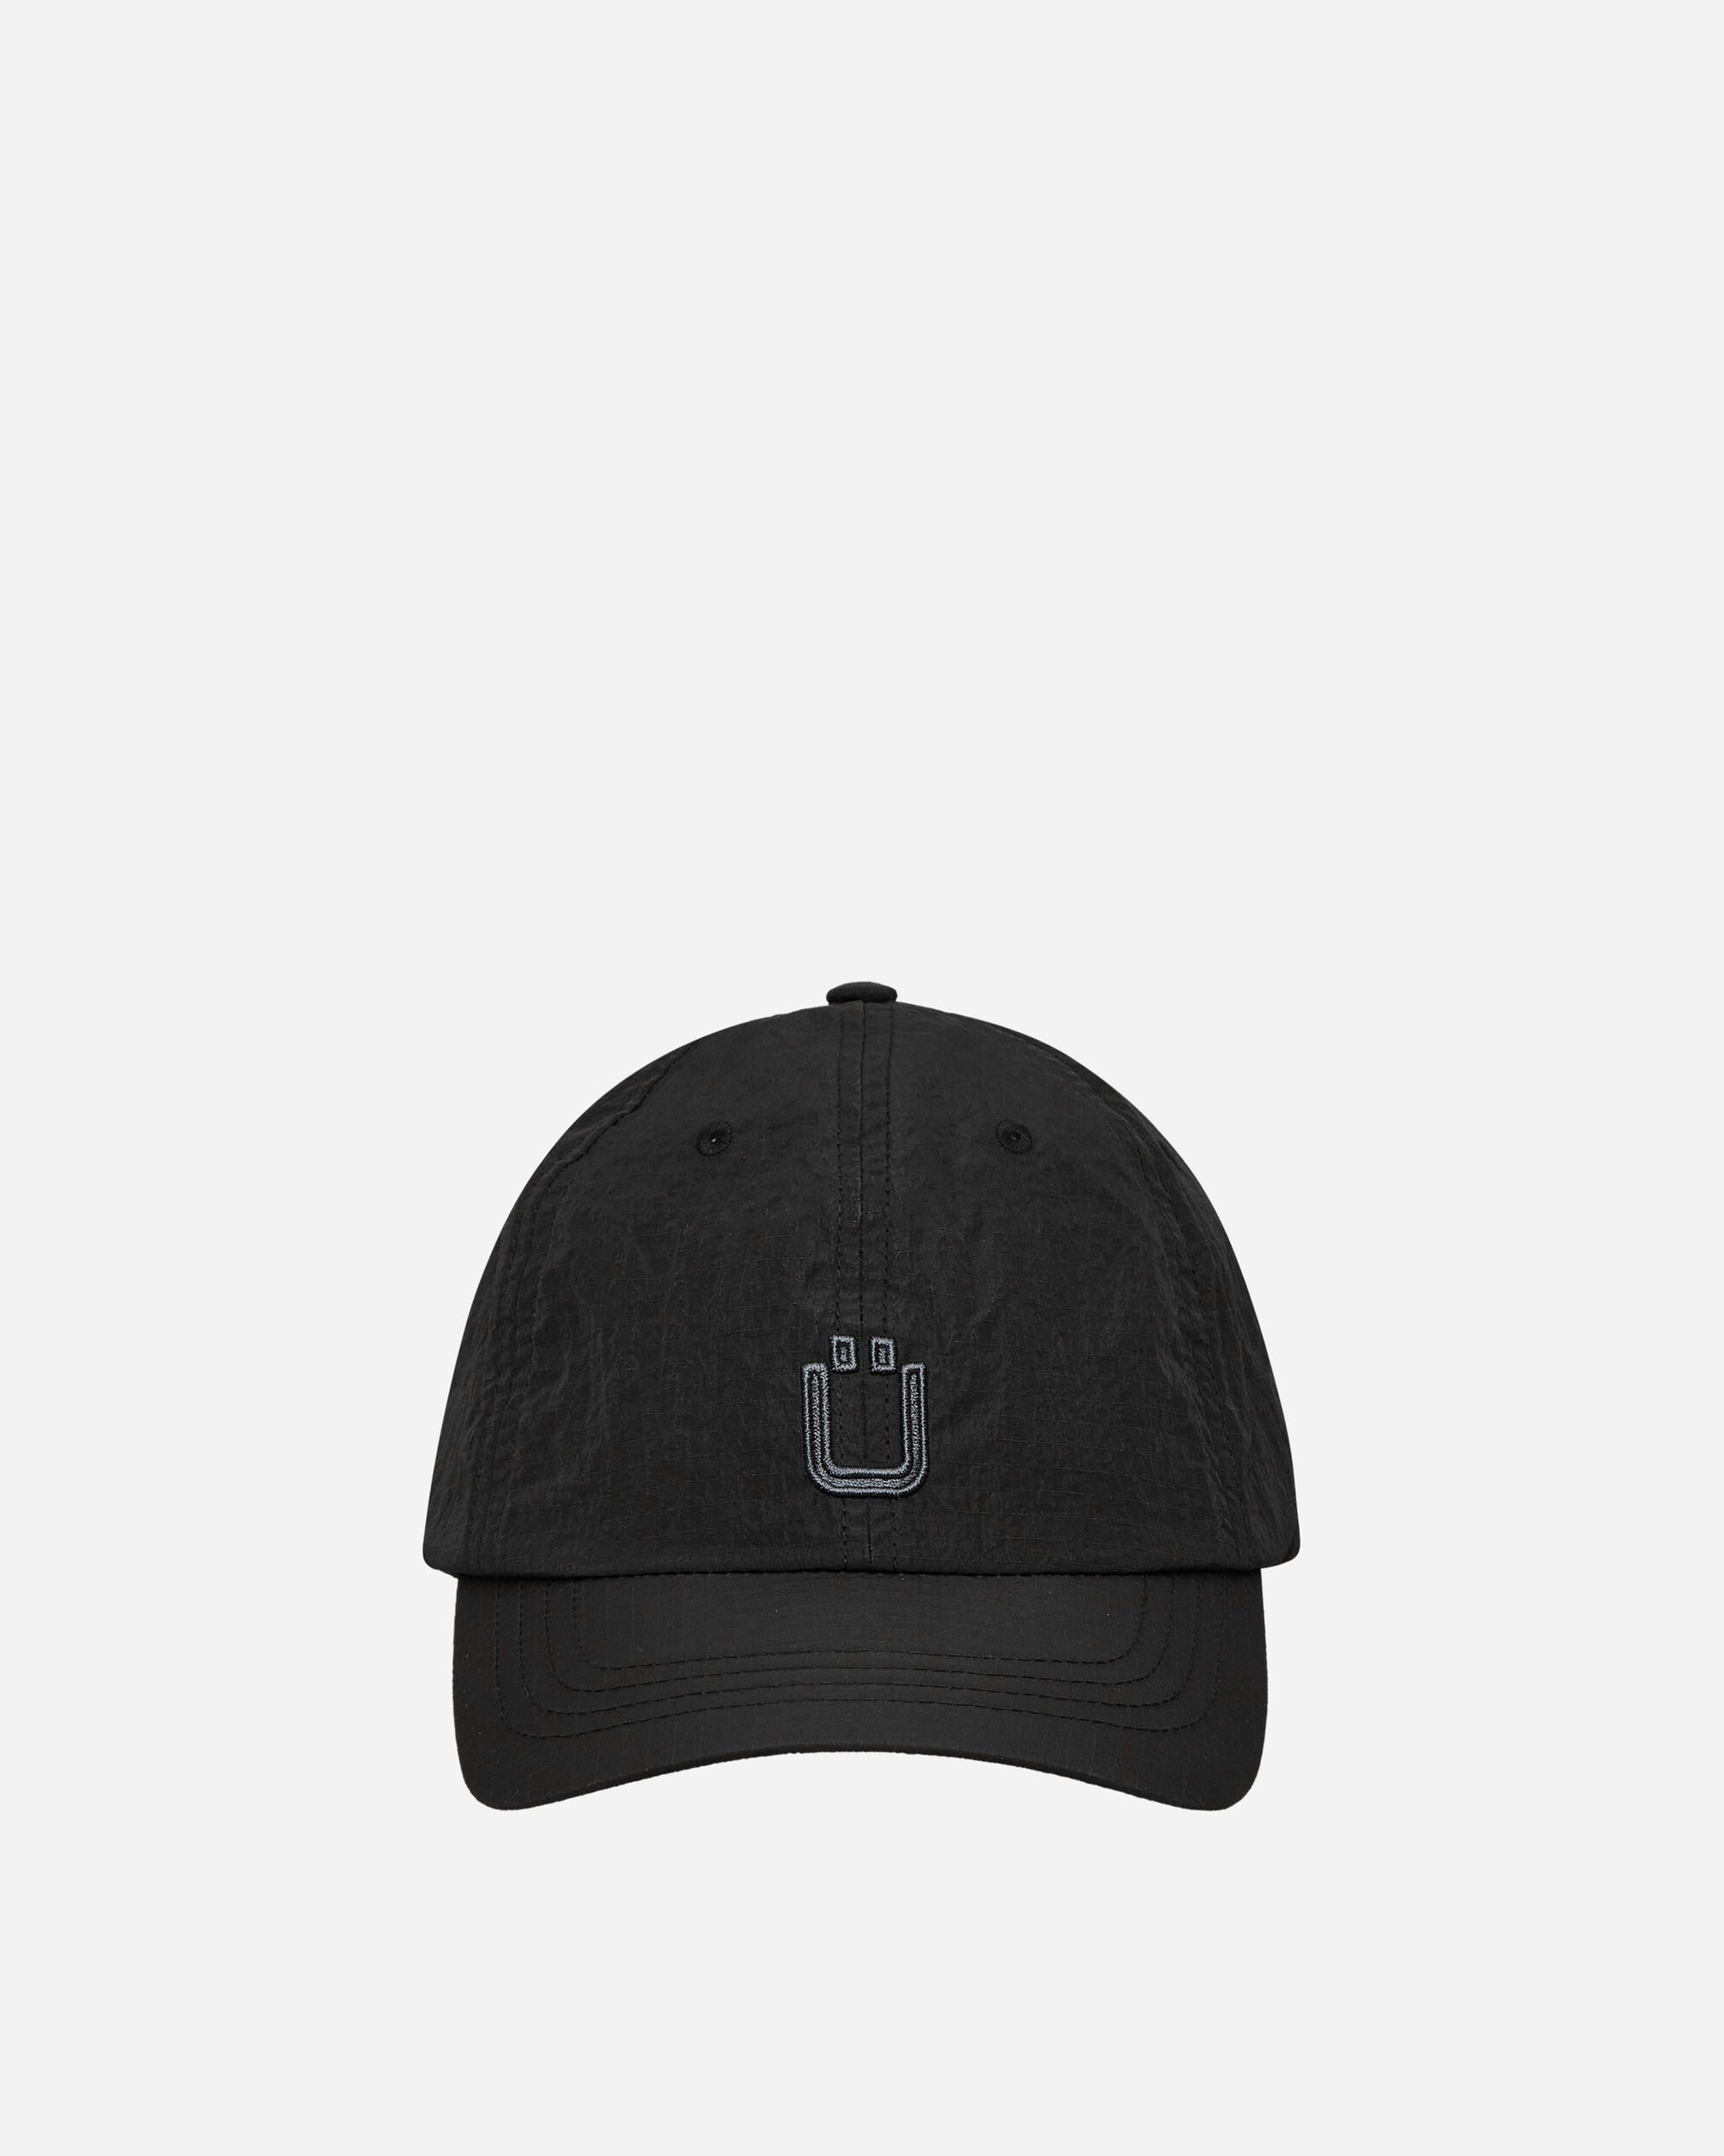 Unaffected Logo Ball Cap Black Hats Caps UN24SSBC02 BLACK